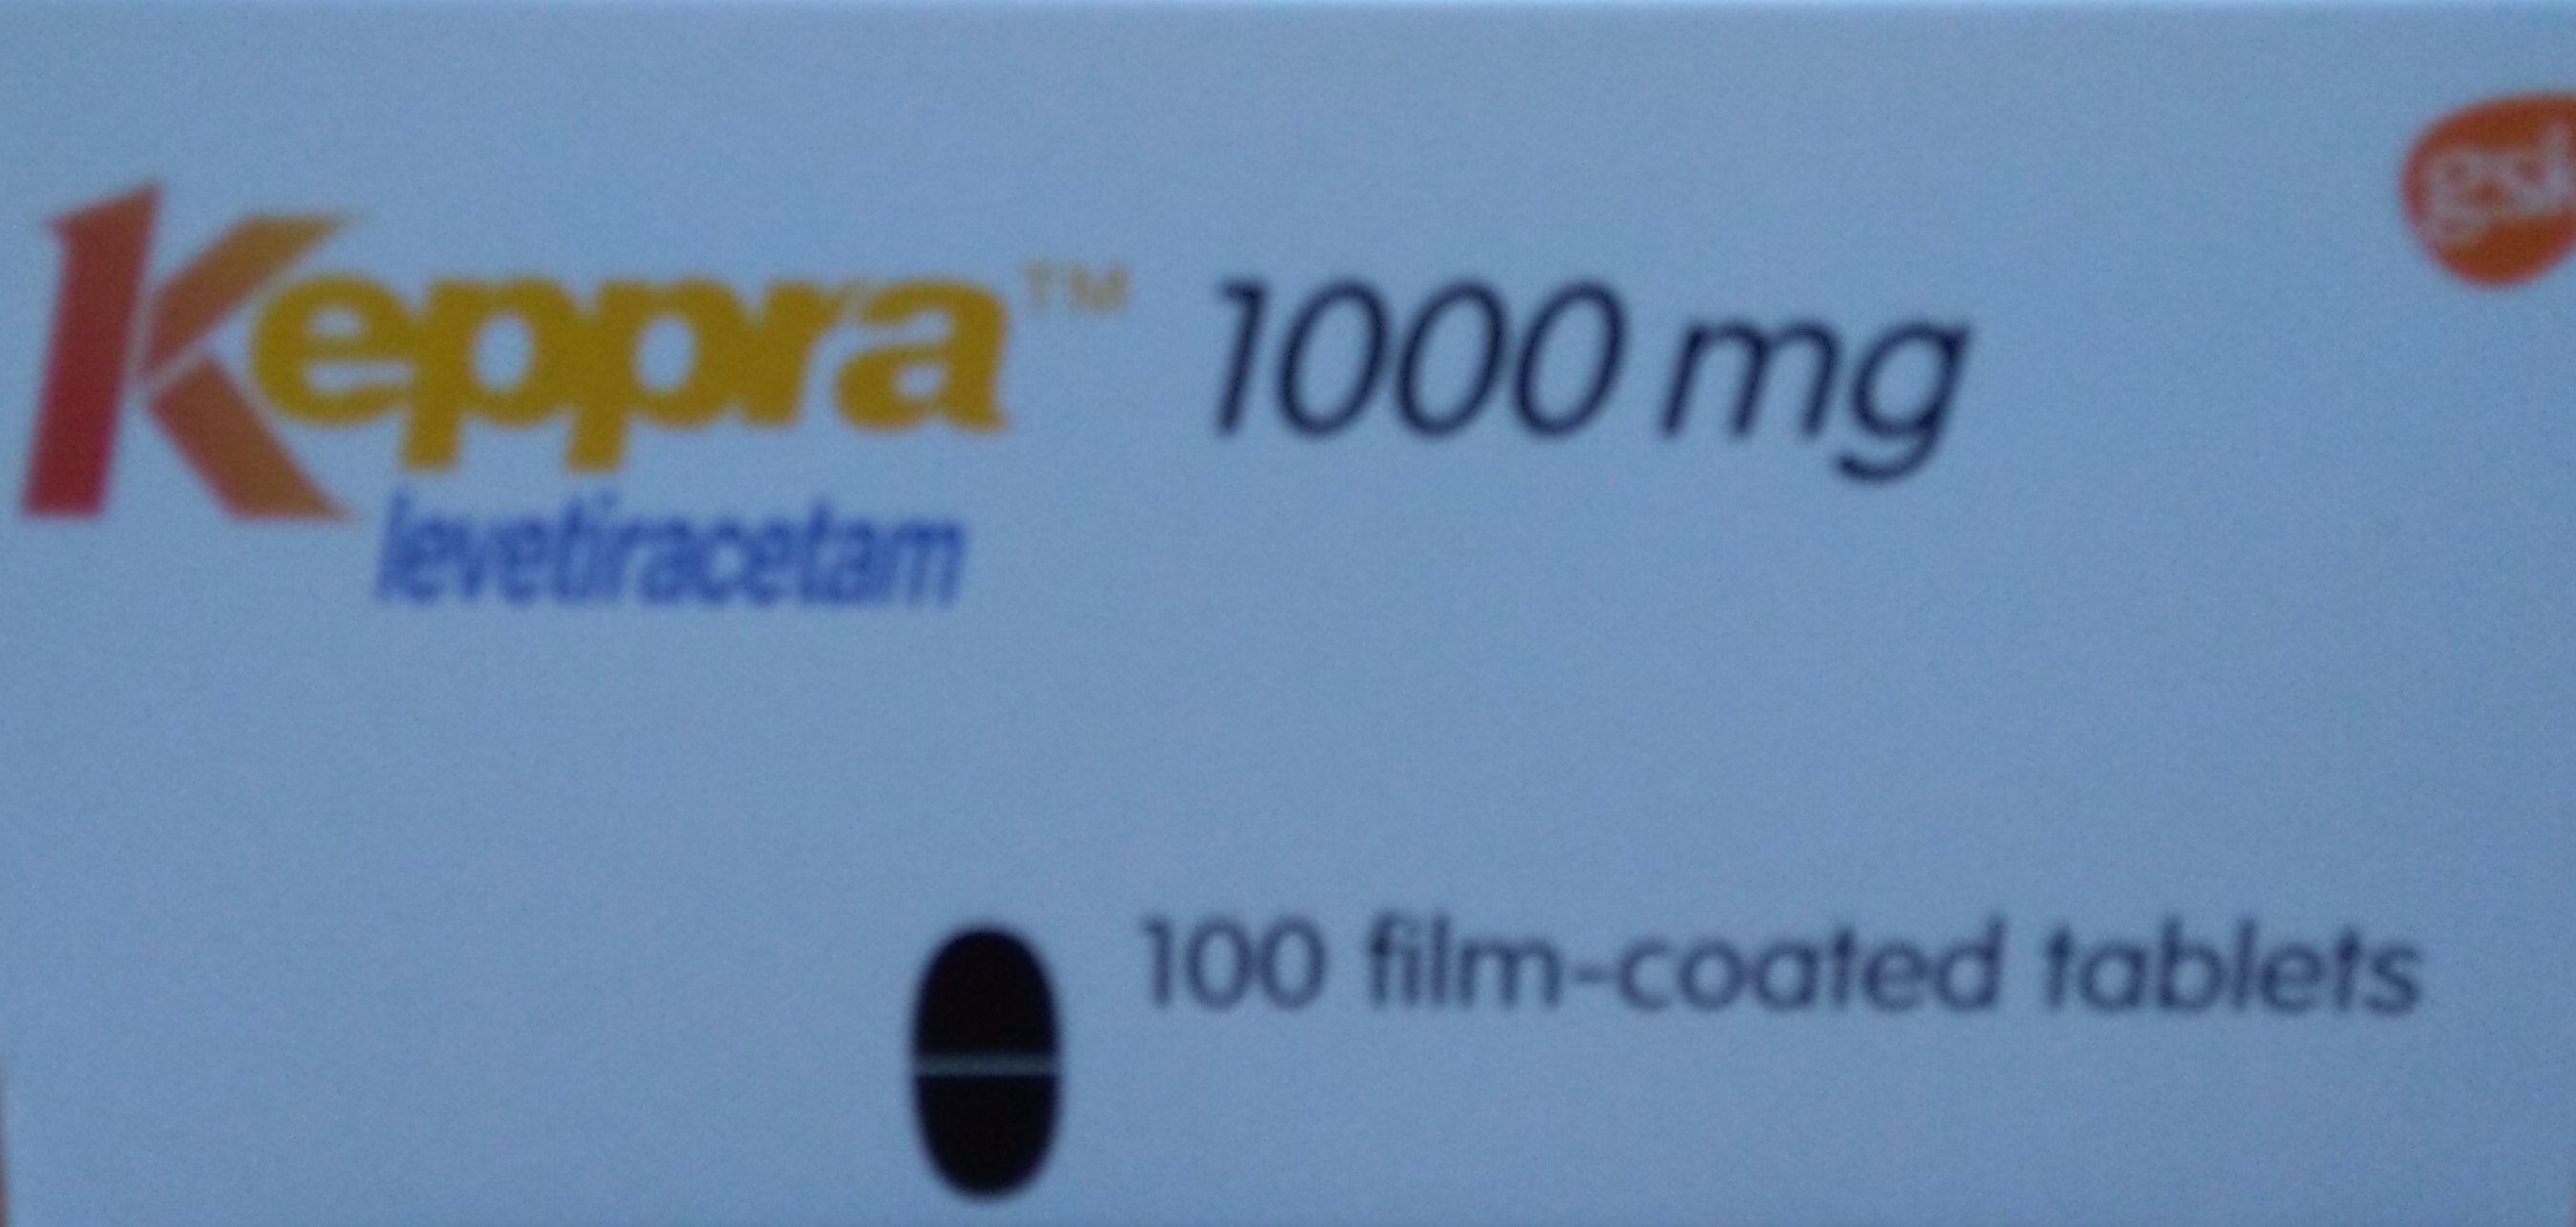 كيبرا أقراص ١ غرام